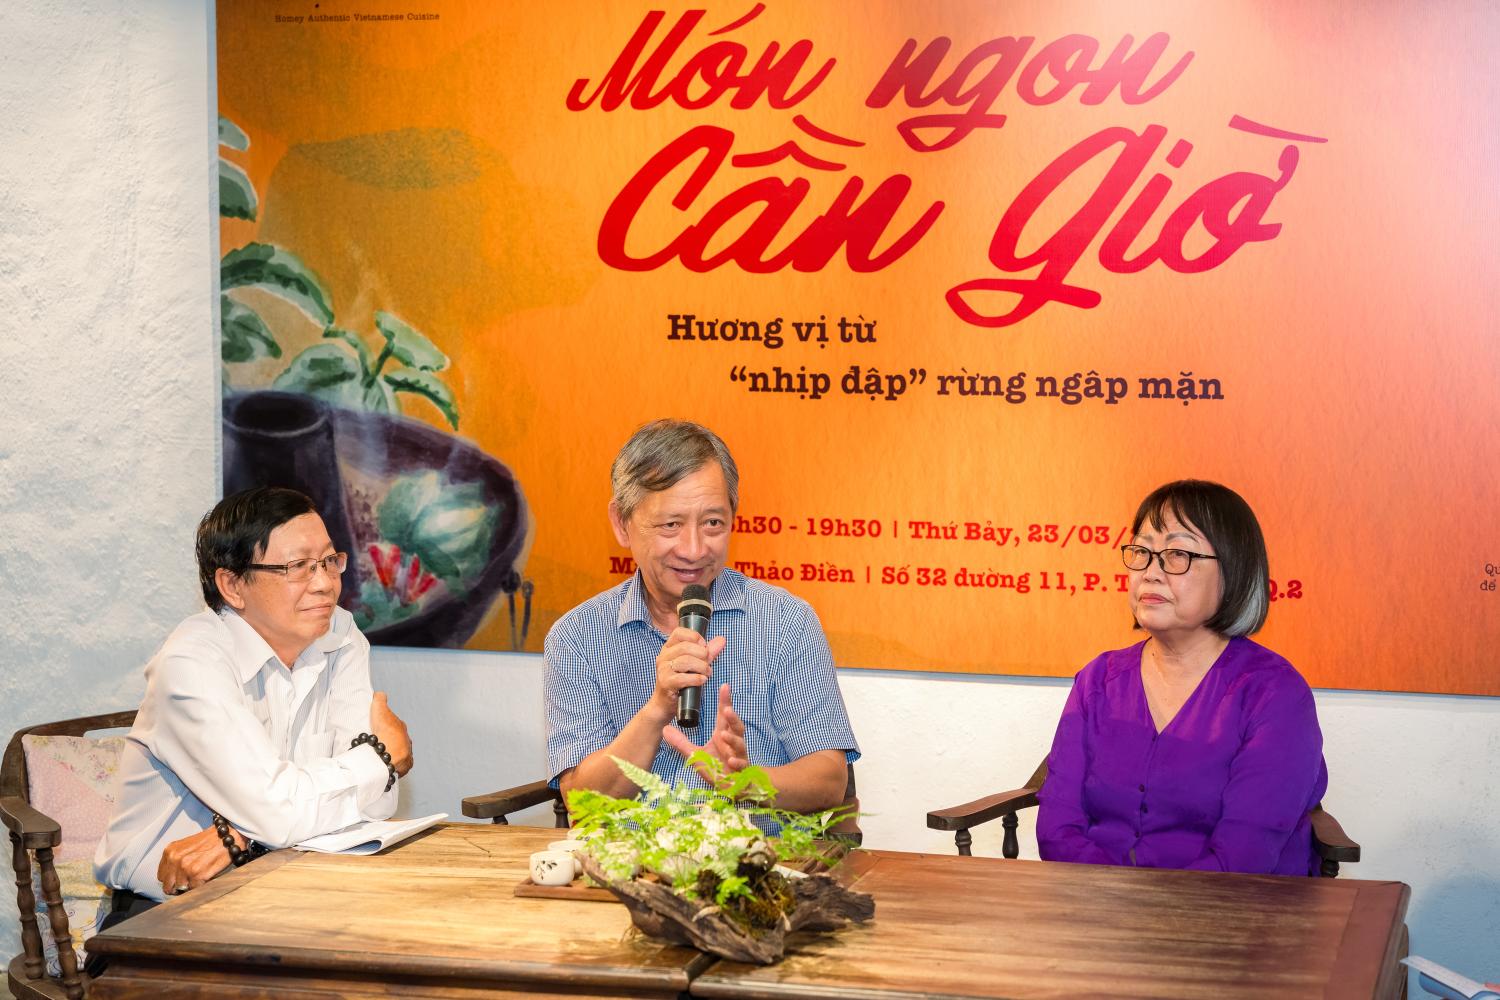 ẩm thực Cần Giờ 5 Khám phá văn hóa ẩm thực bản địa Sài Gòn từ xứ sở rừng ngập mặn Cần Giờ